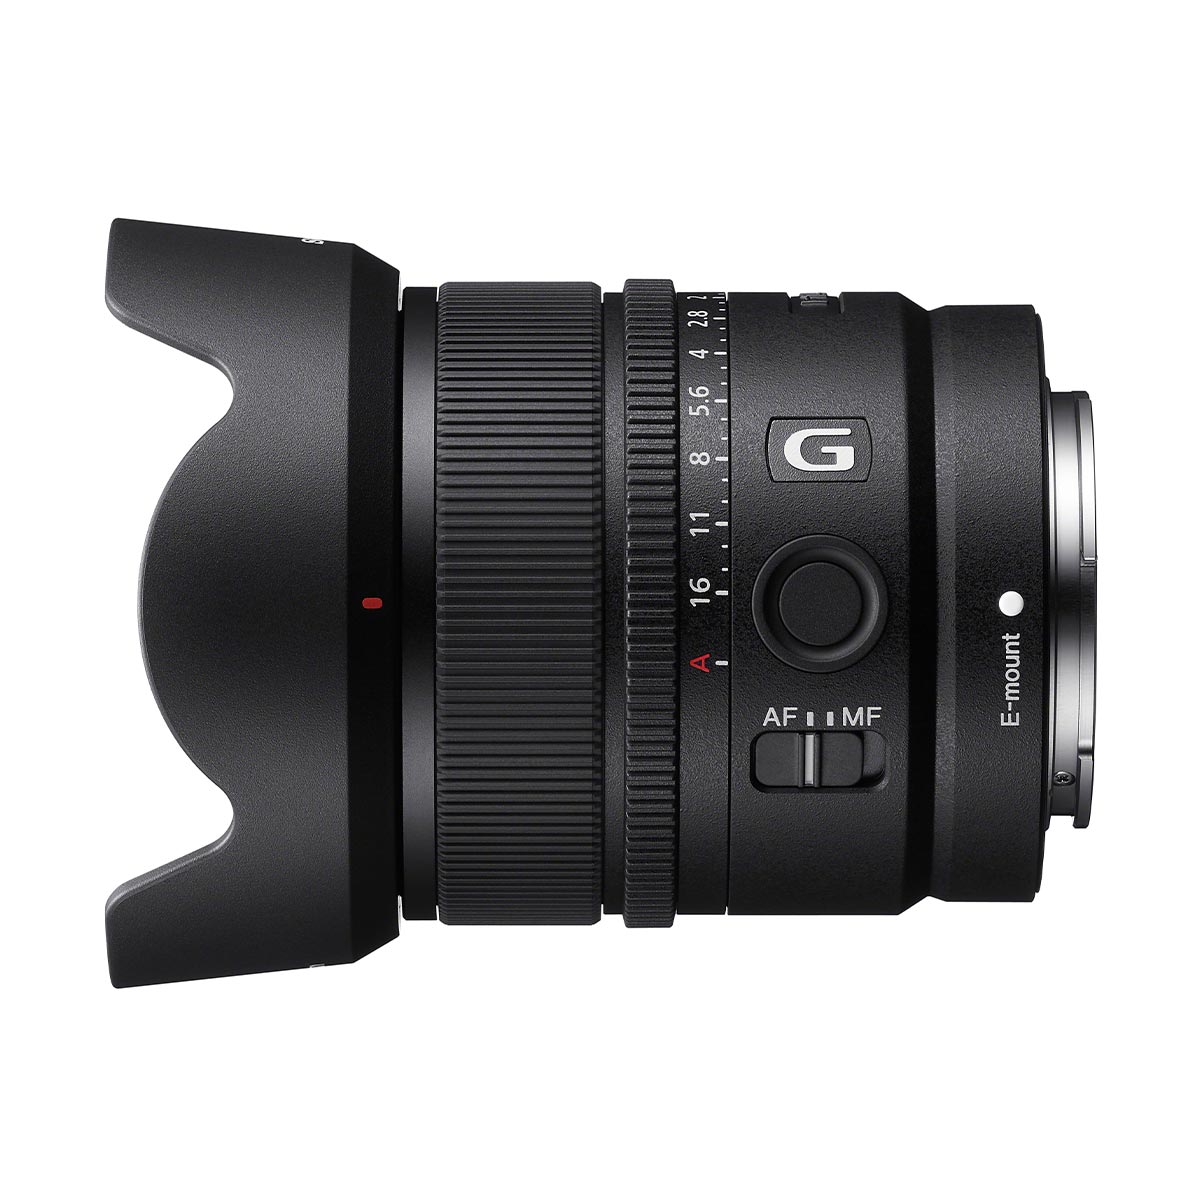 Sony E-Mount 15mm f/1.4 G Lens